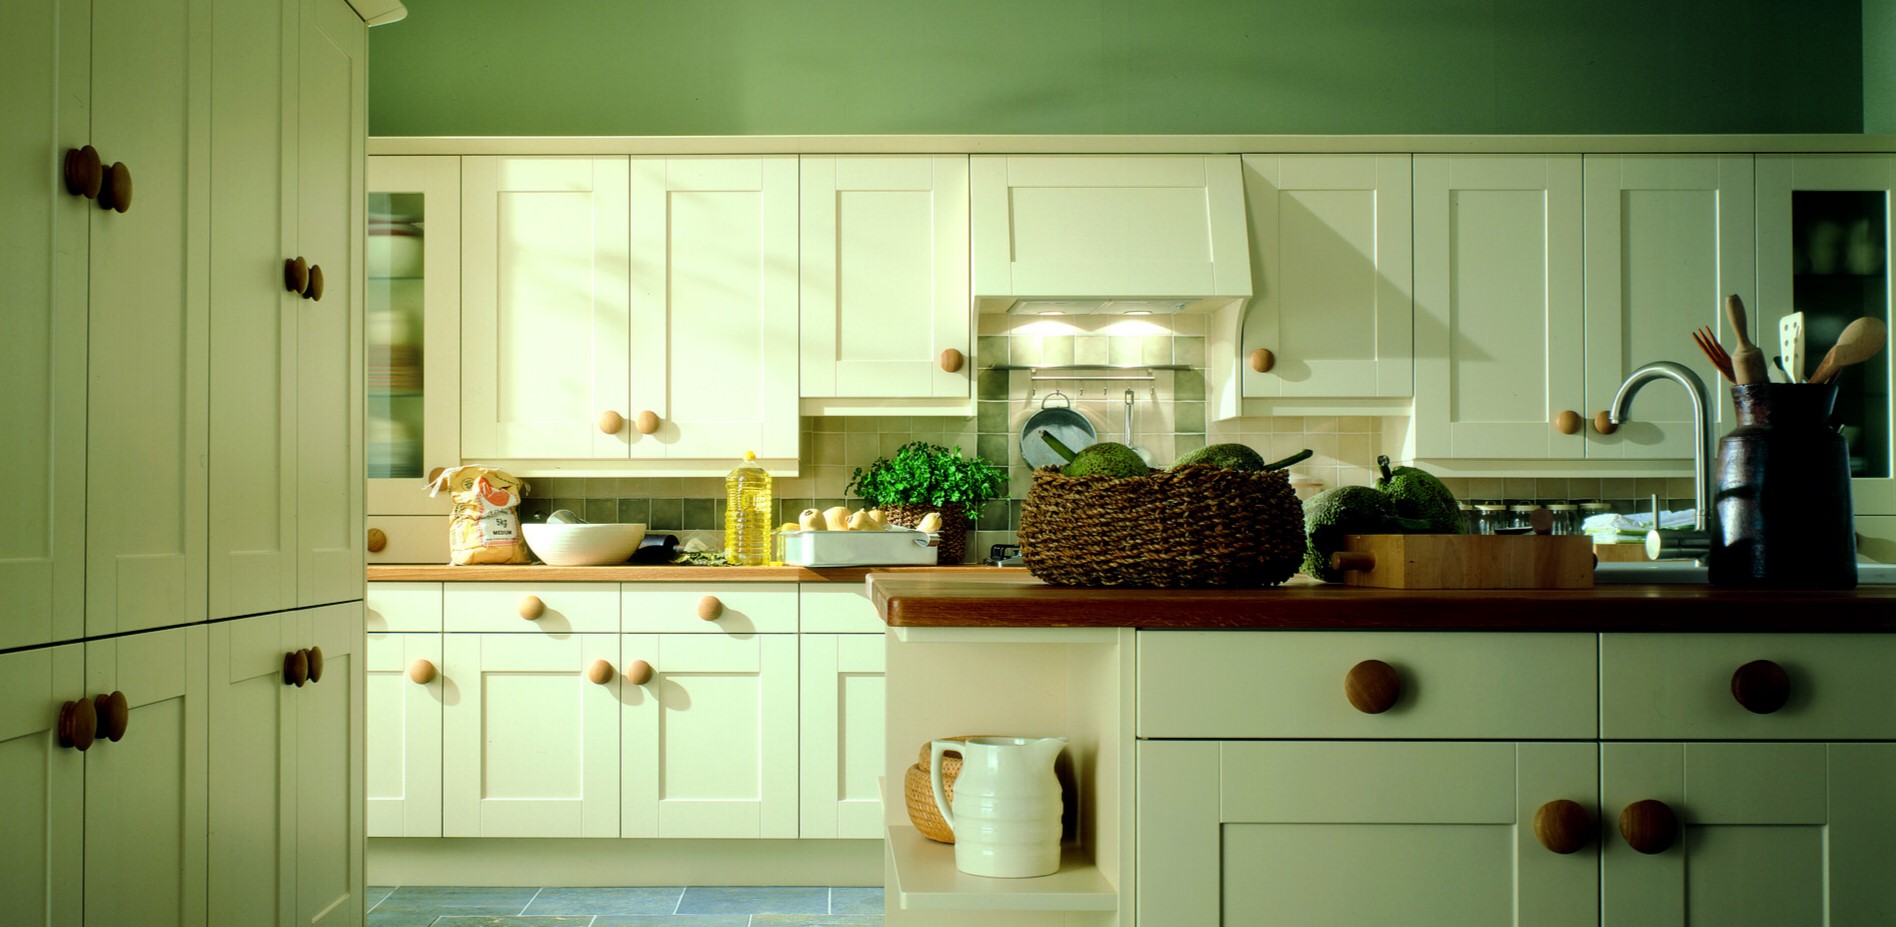 Зеленый цвет в интерьере кухни: идеи оформления, сочетание с другими оттенками.